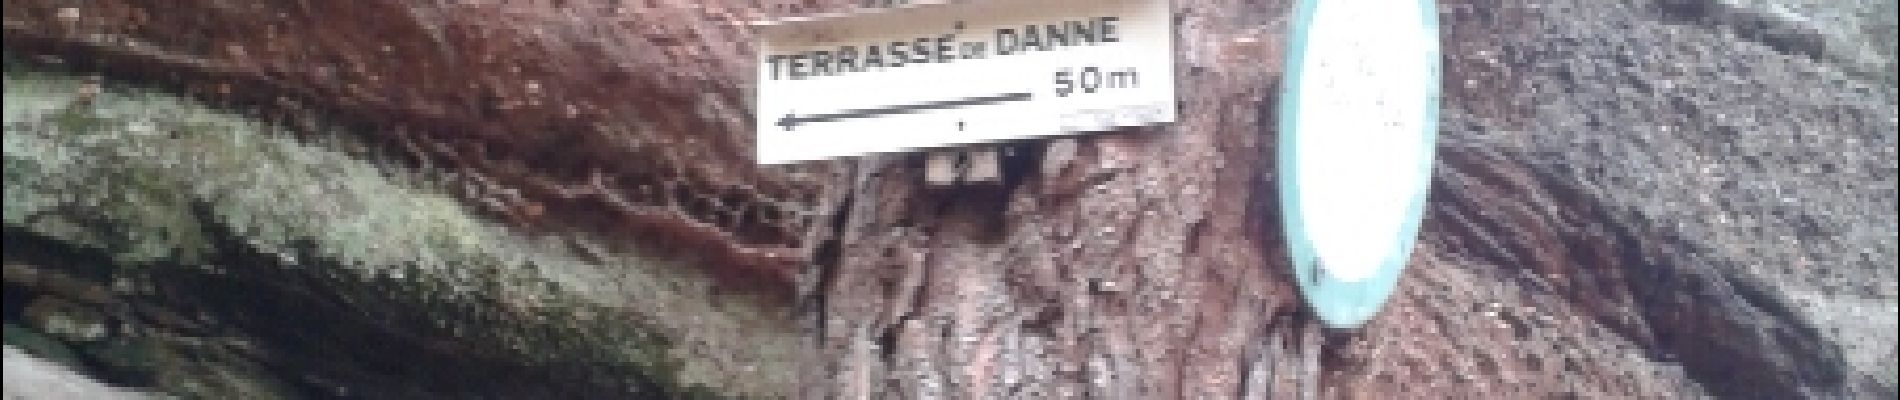 POI Danne-et-Quatre-Vents - terrasse de danne - Photo